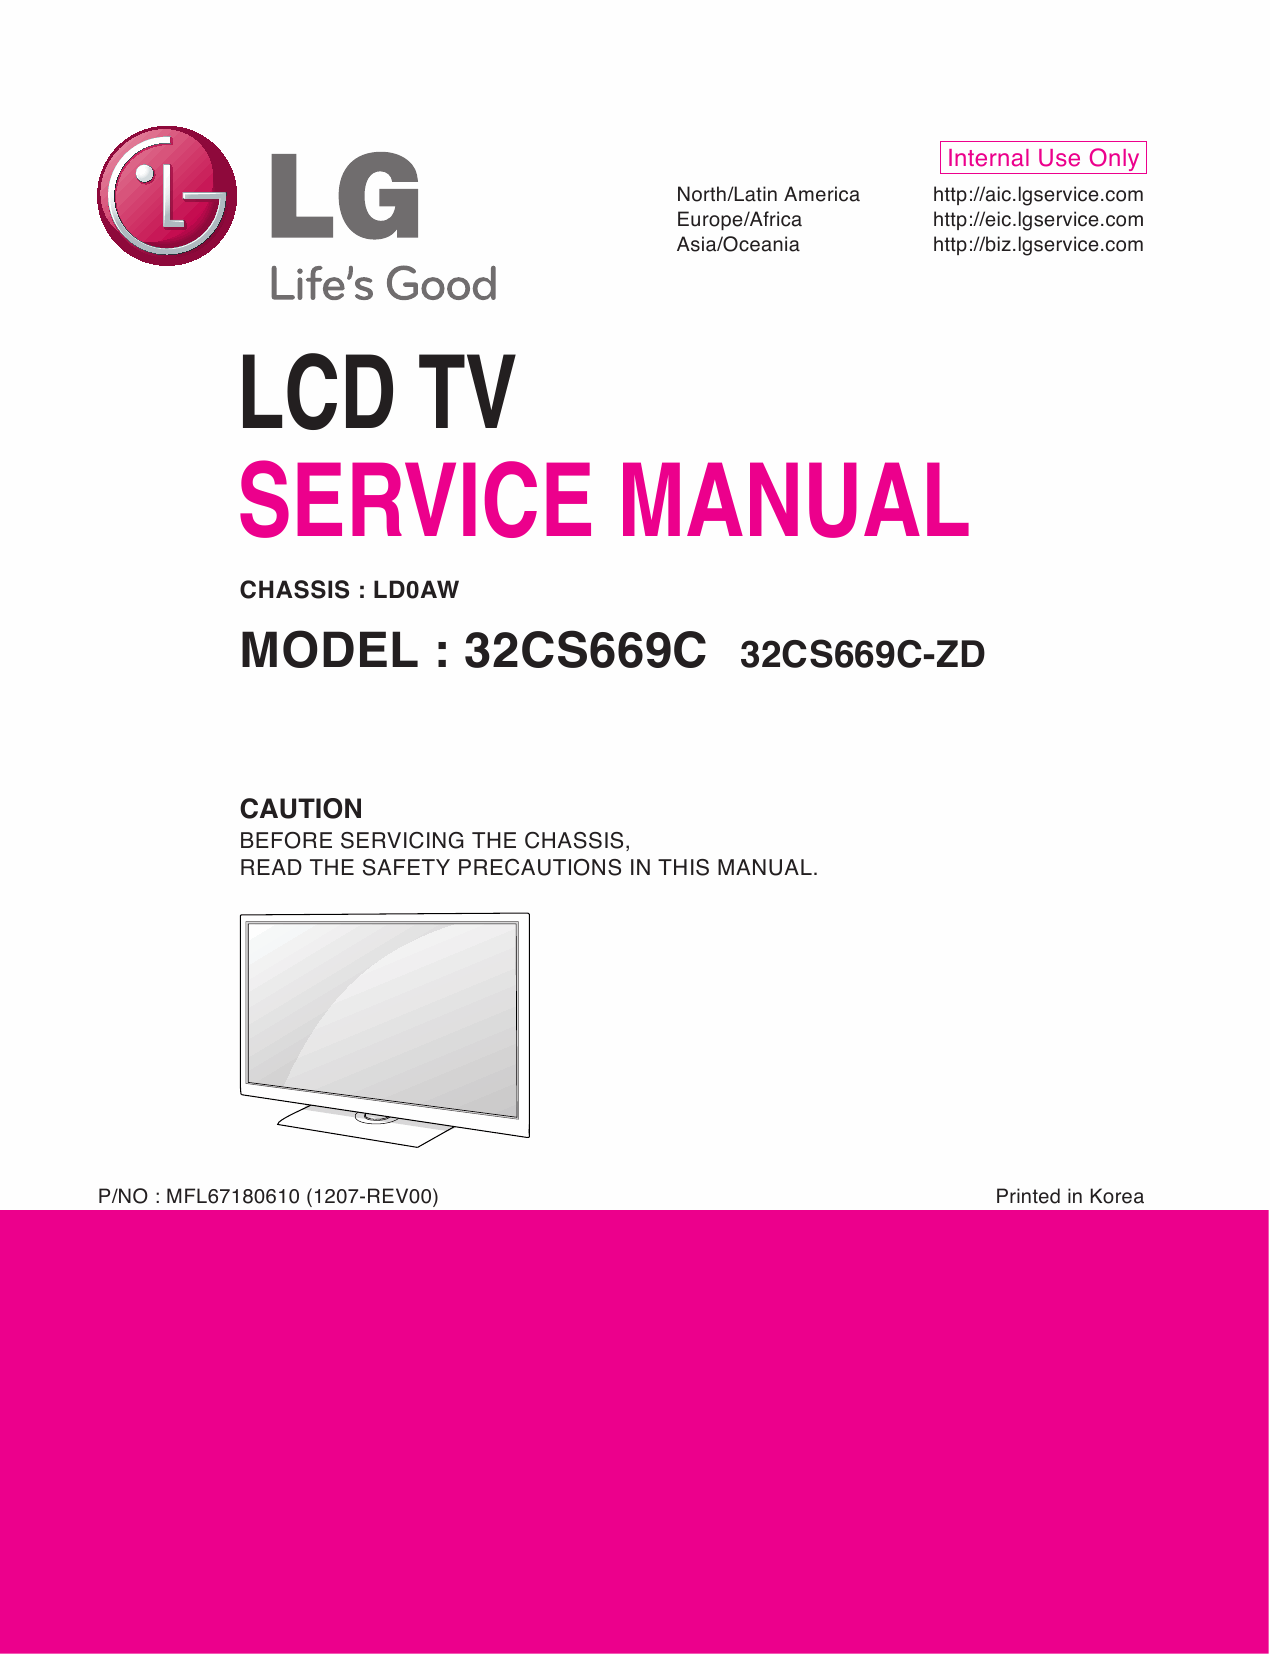 LG_LCD_TV_32CS669C_Service_Manual_2012_Qmanual.com-1